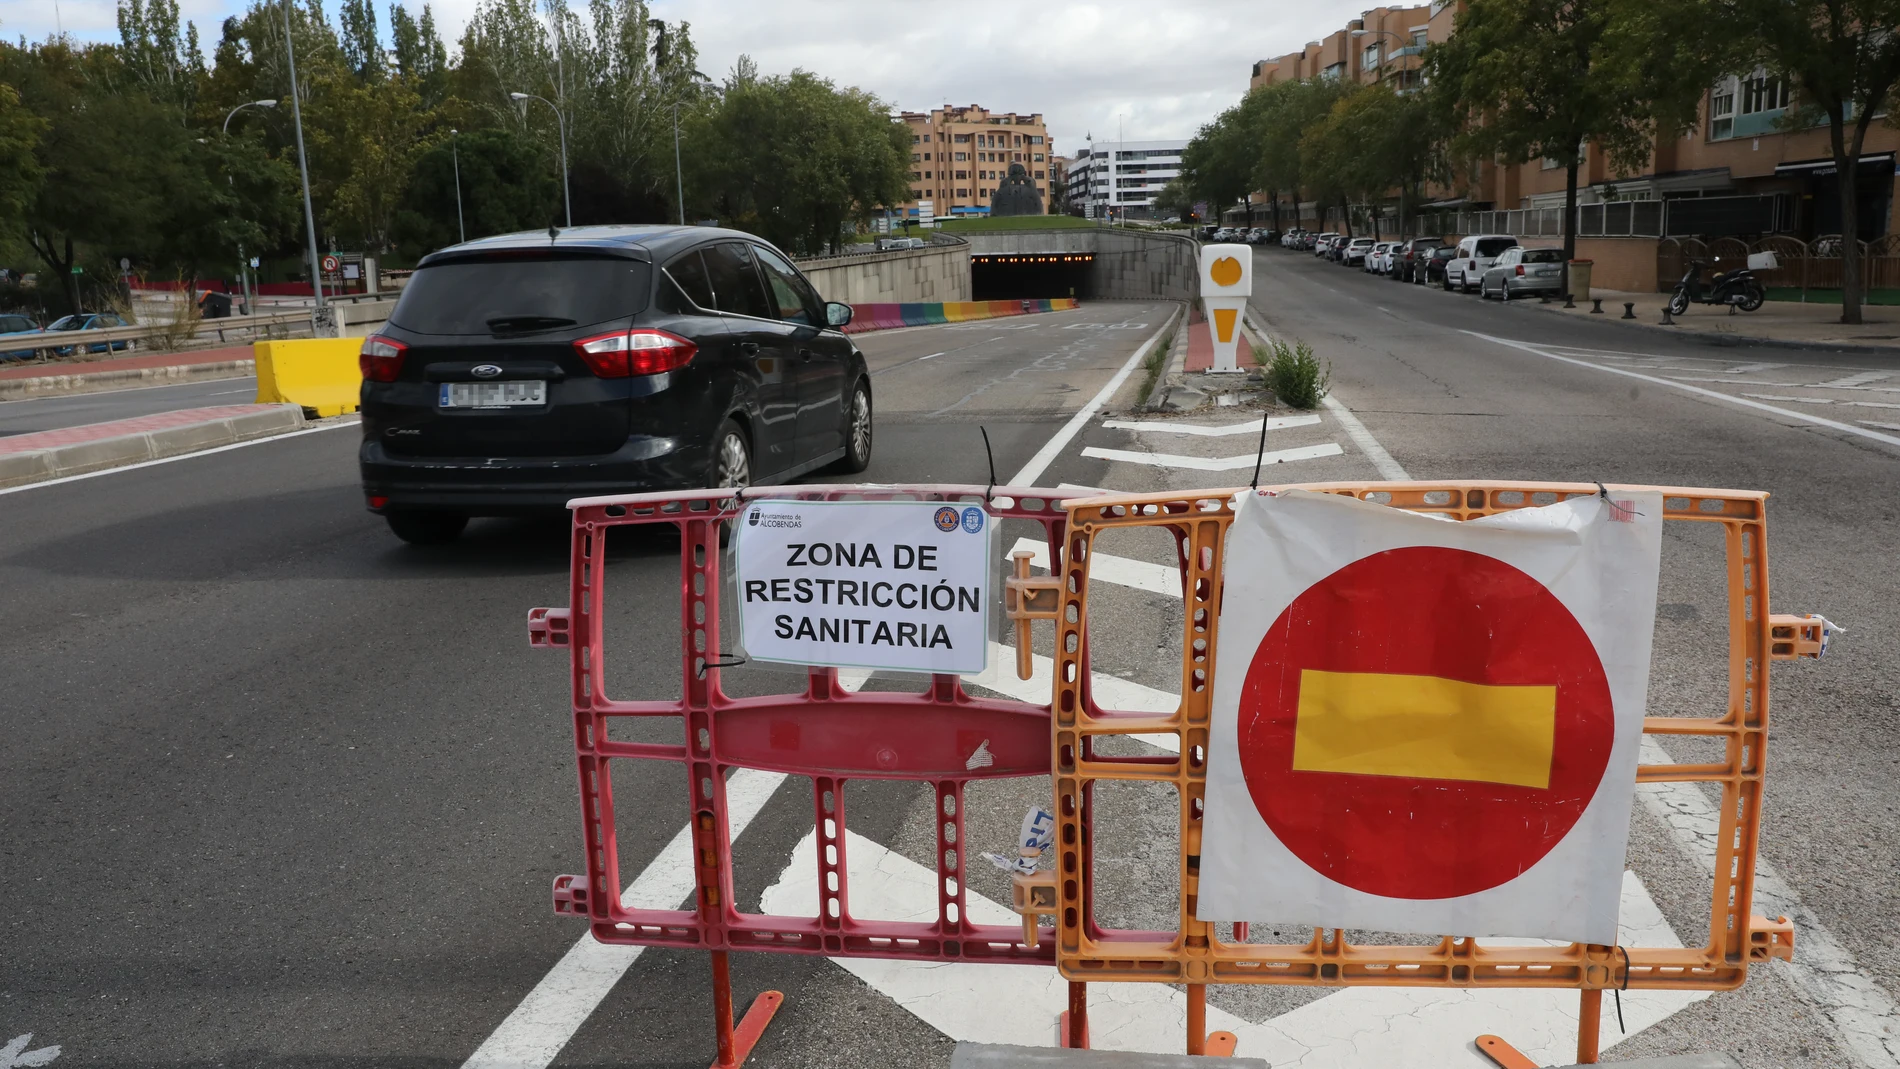 Un coche pasa junto a un cartel que indica que accede a una zona de restricción sanitaria, durante el confinamiento de Alcobendas, Madrid.